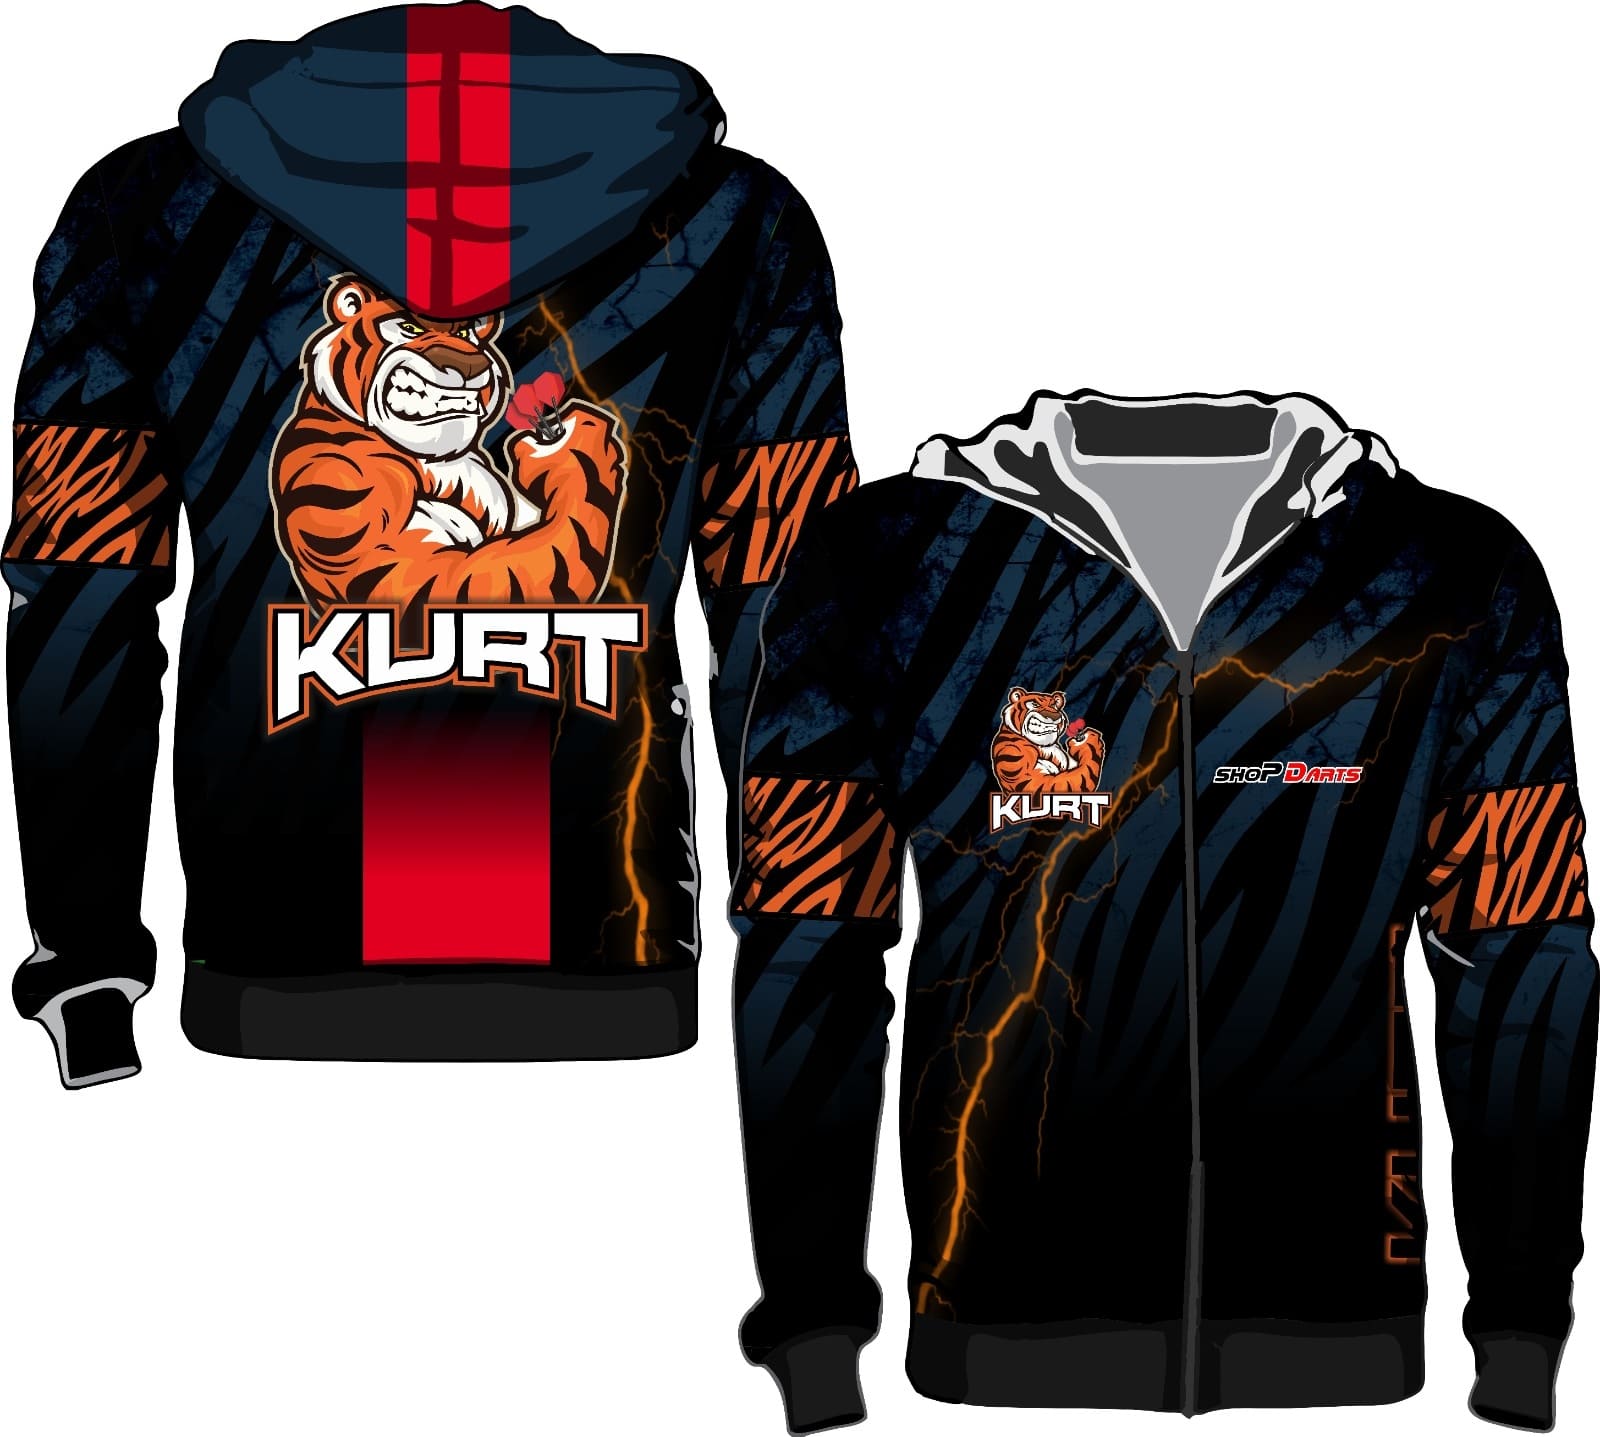 Tiger hoodie